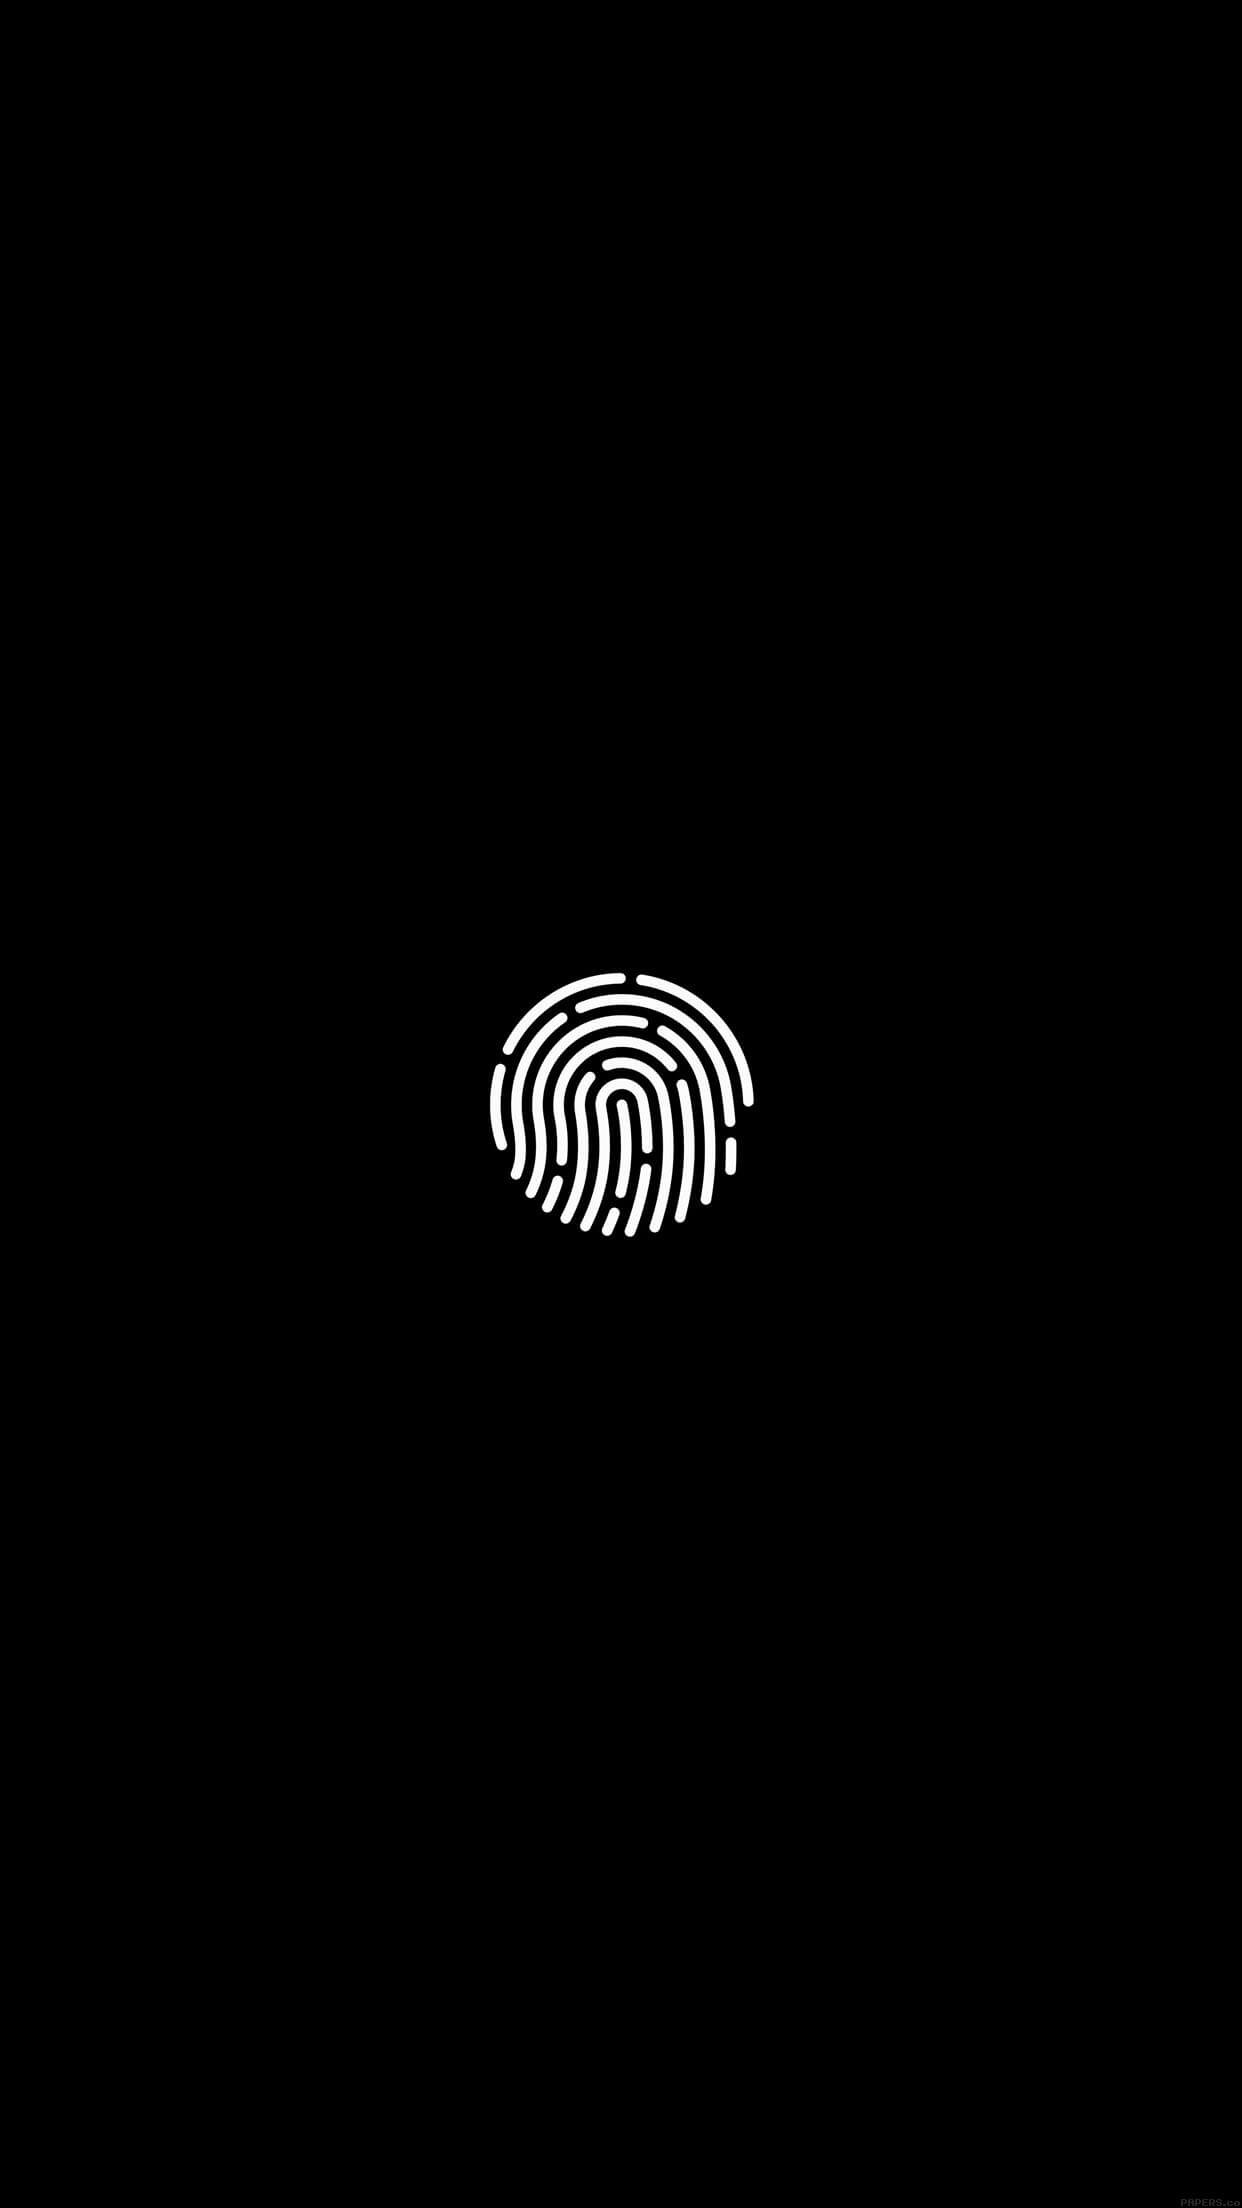 Black and white fingerprint iphone wallpaper